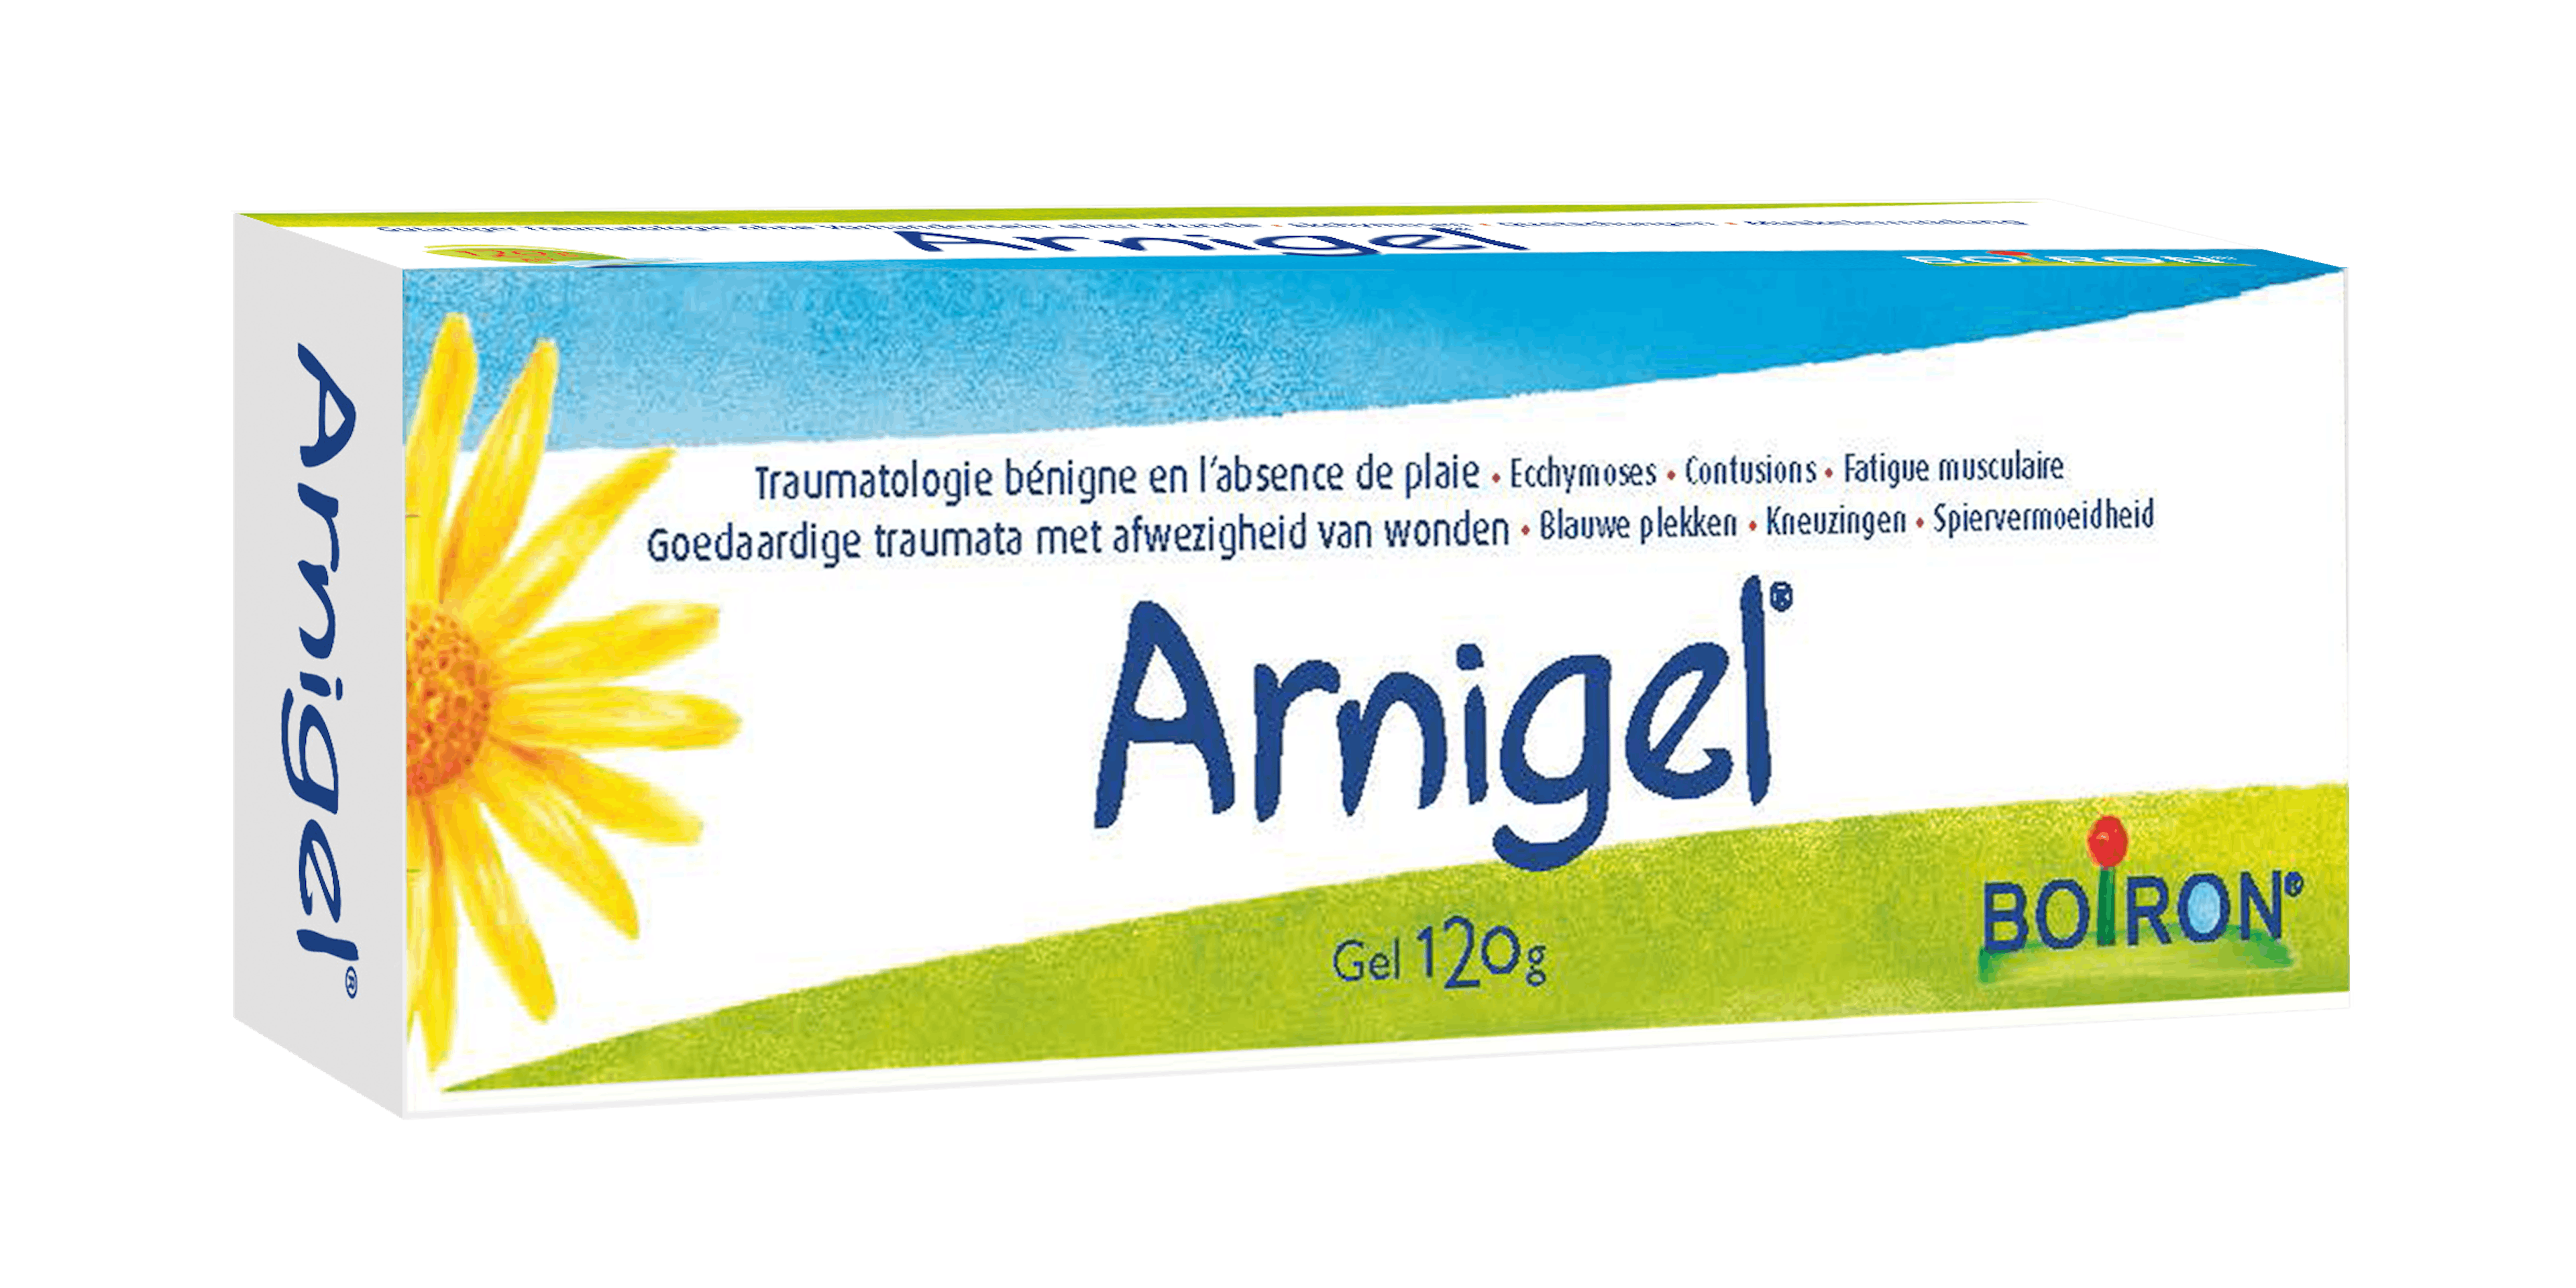 arnigel - onze homeopathische geneesmiddelen specialiteiten - Blauwe plekken - Builen - Spiervermoeidheid